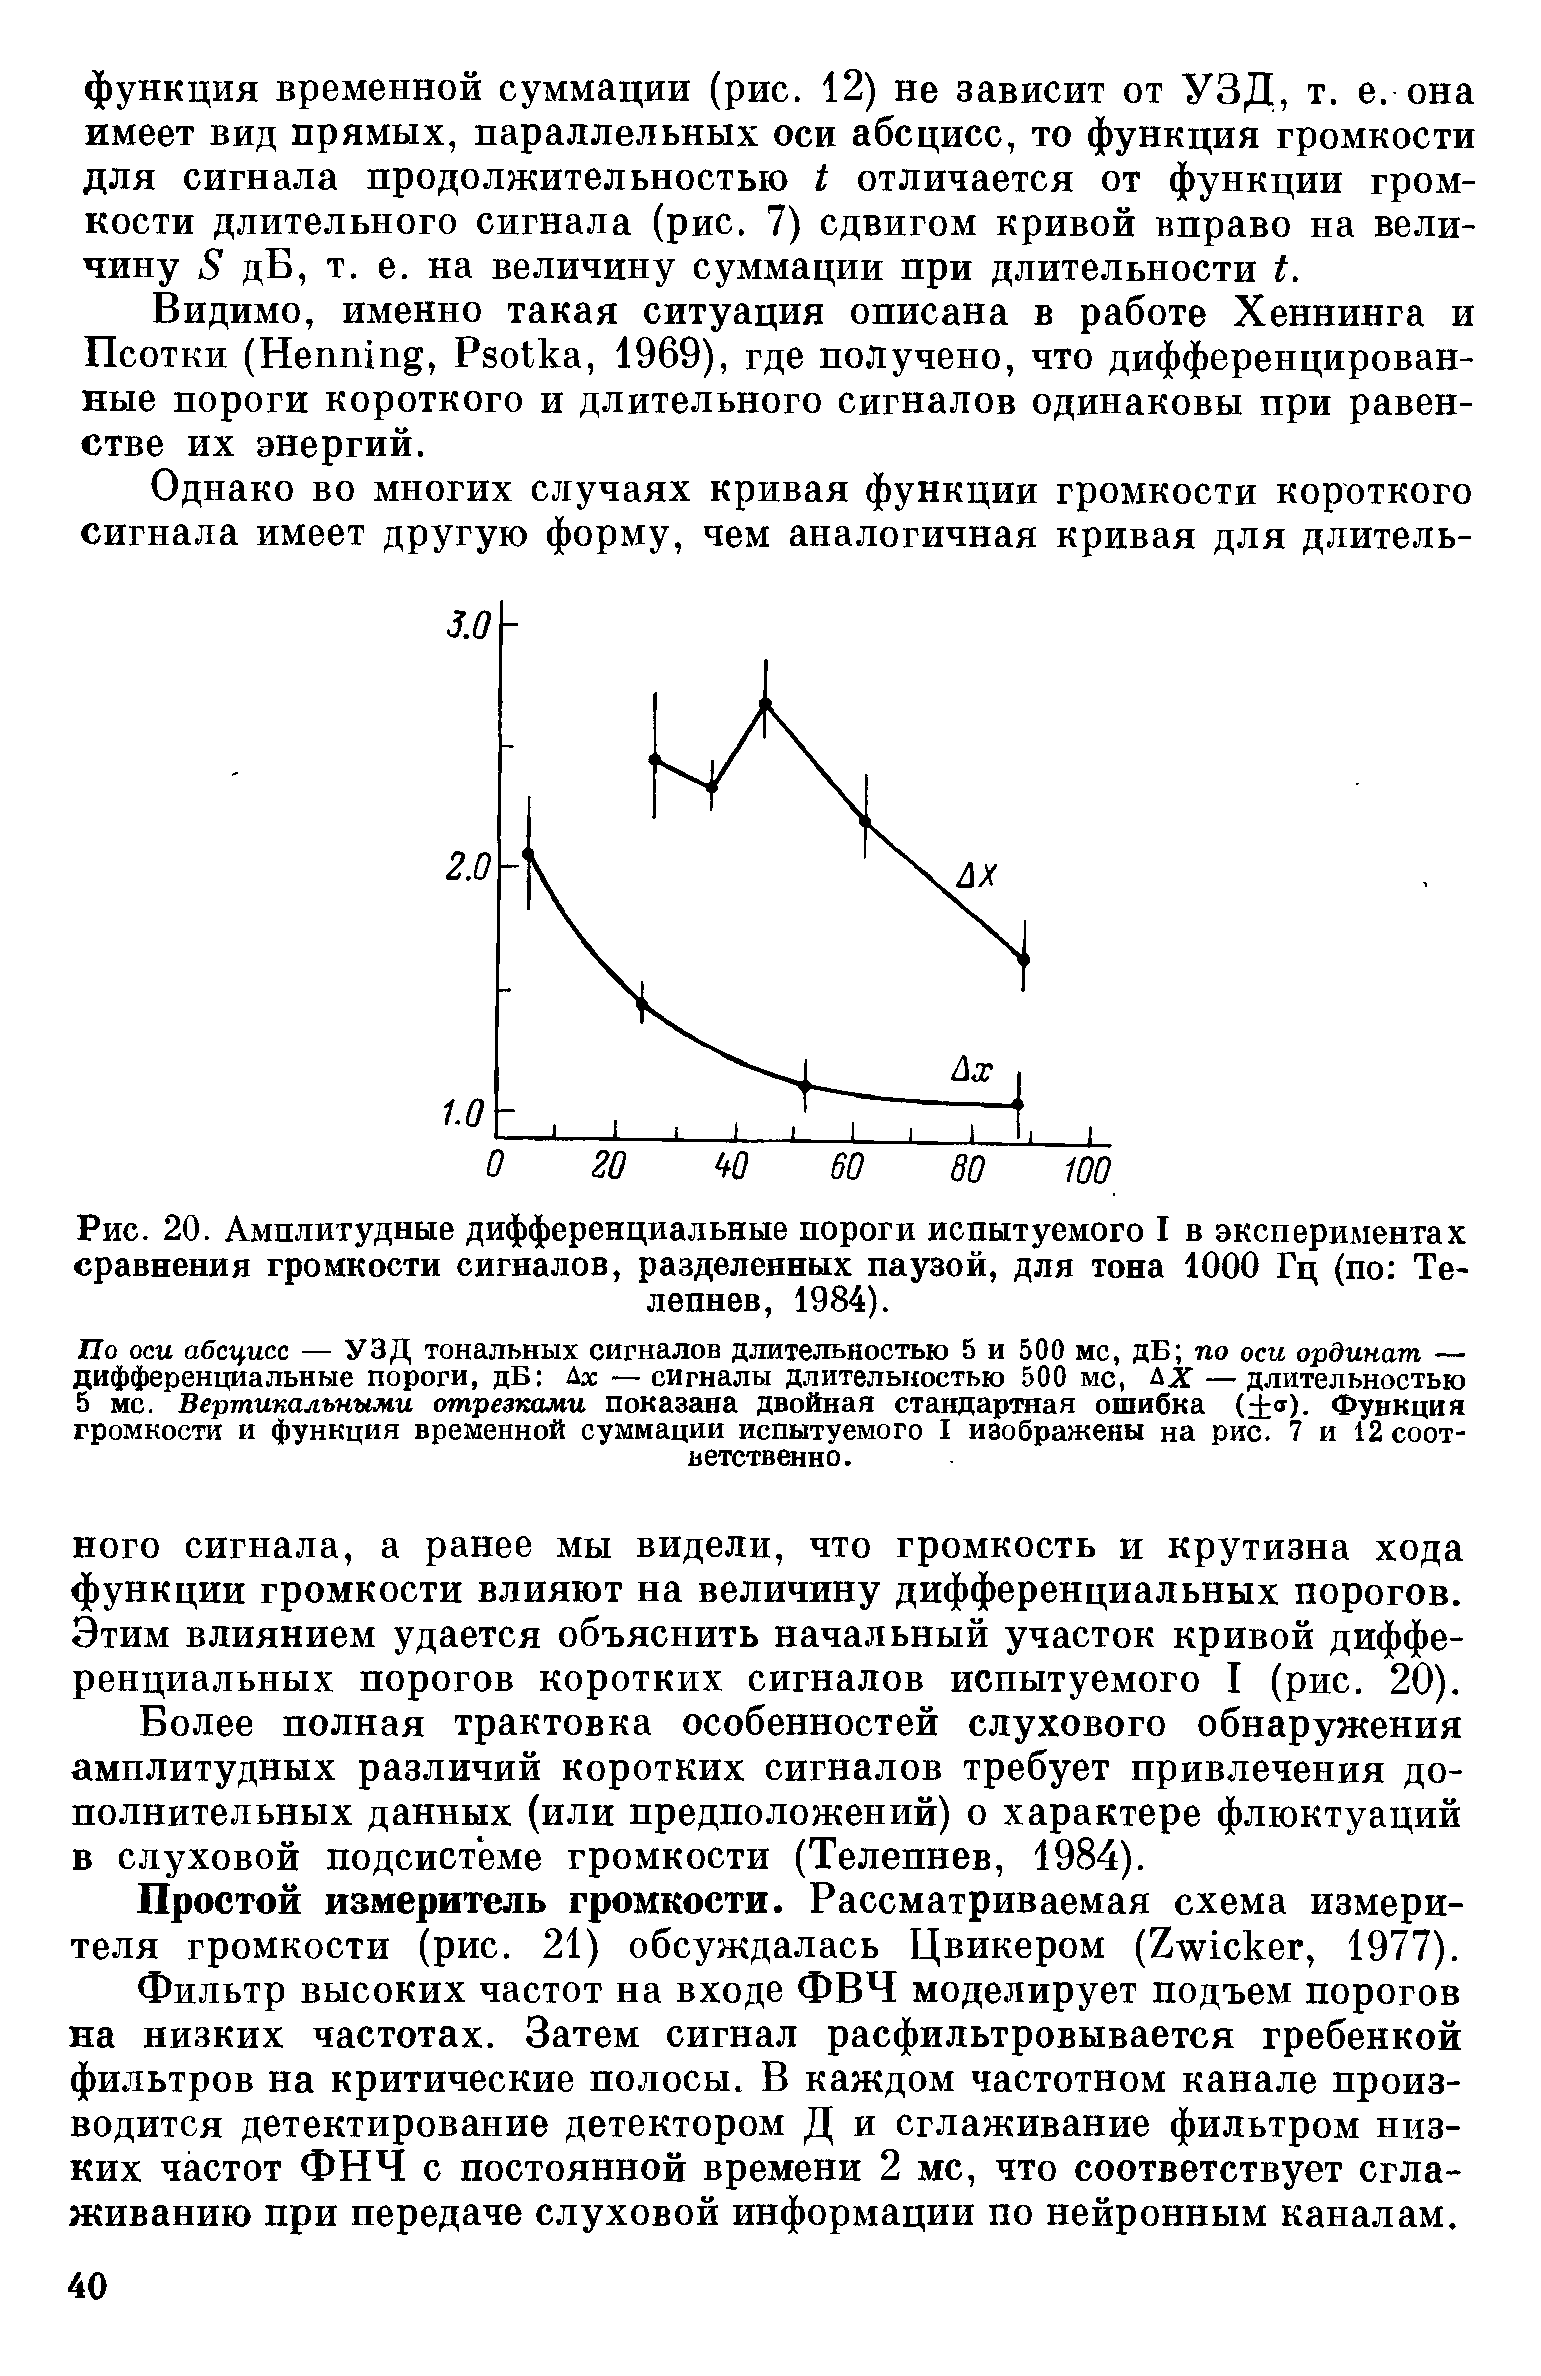 Рис. 20. Амплитудные дифференциальные пороги испытуемого I в <a href="/info/562877">экспериментах сравнения</a> громкости сигналов, разделенных паузой, для тона 1000 Гц (по Телепнев, 1984).
